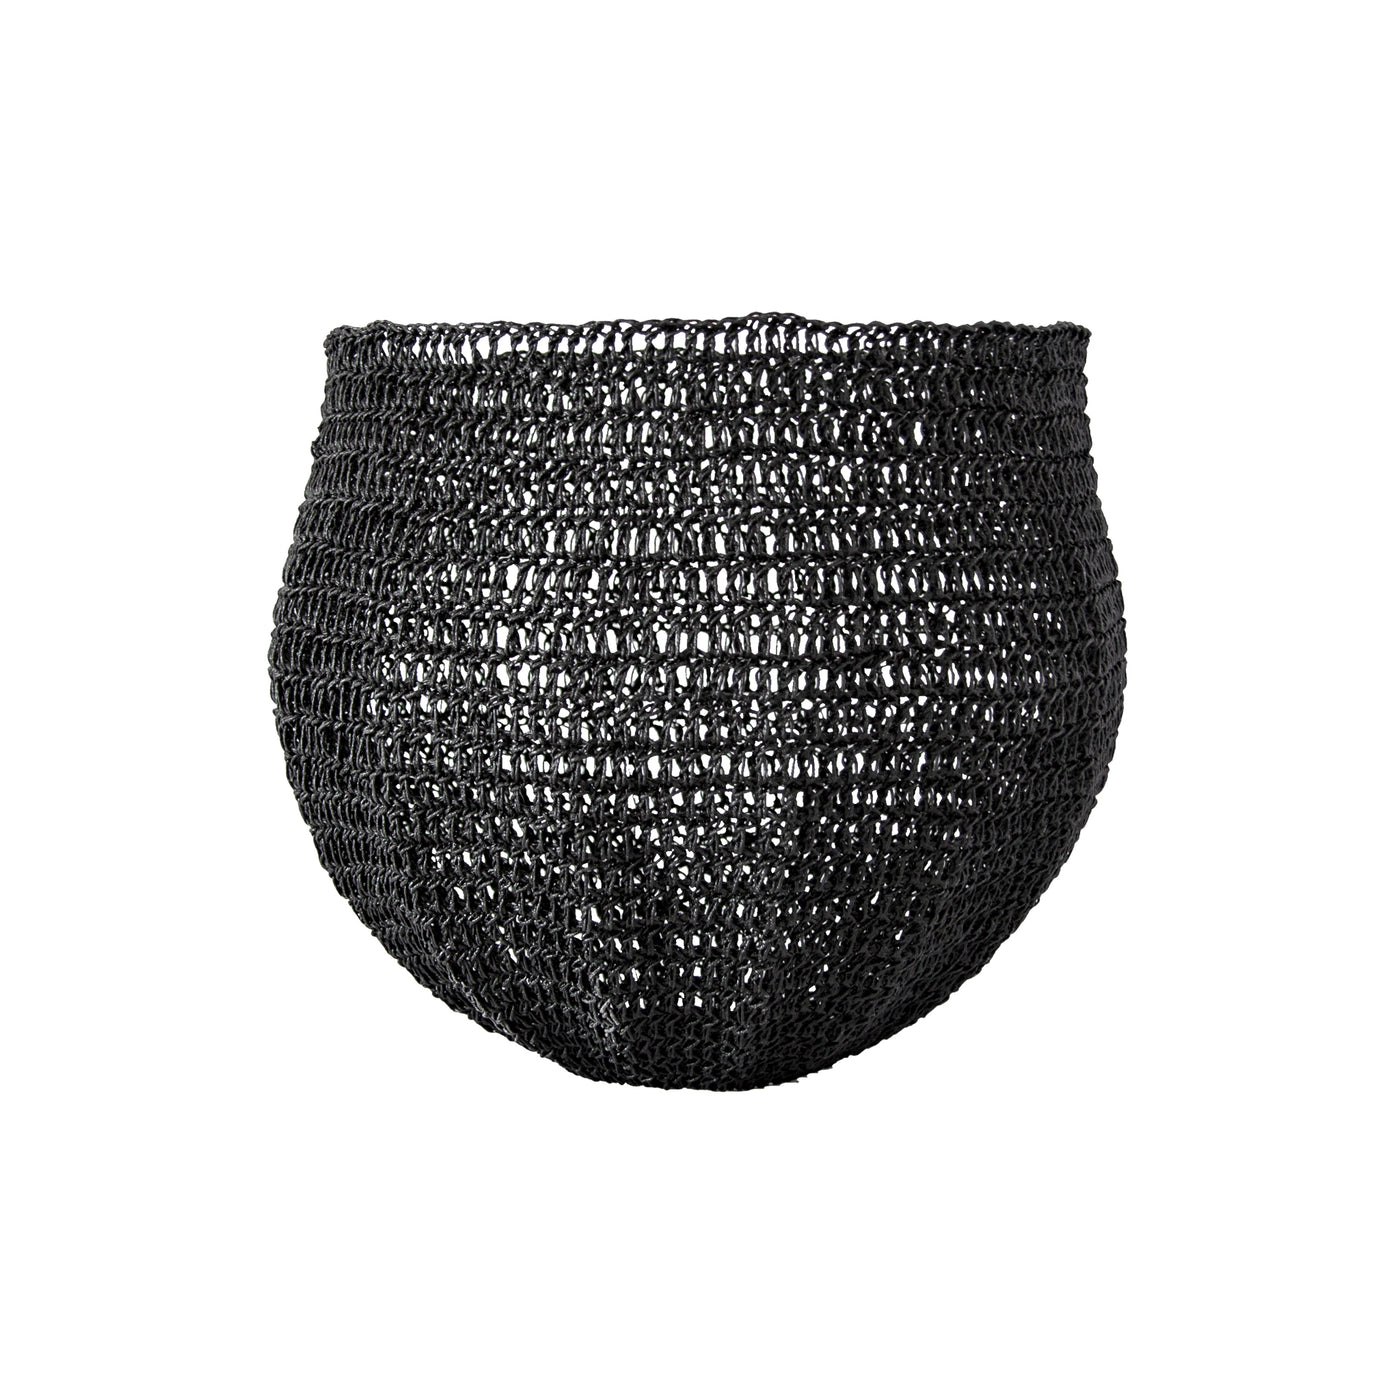 Crochet Basket (medium | black) by Safari Fusion www.safarifusion.com.au